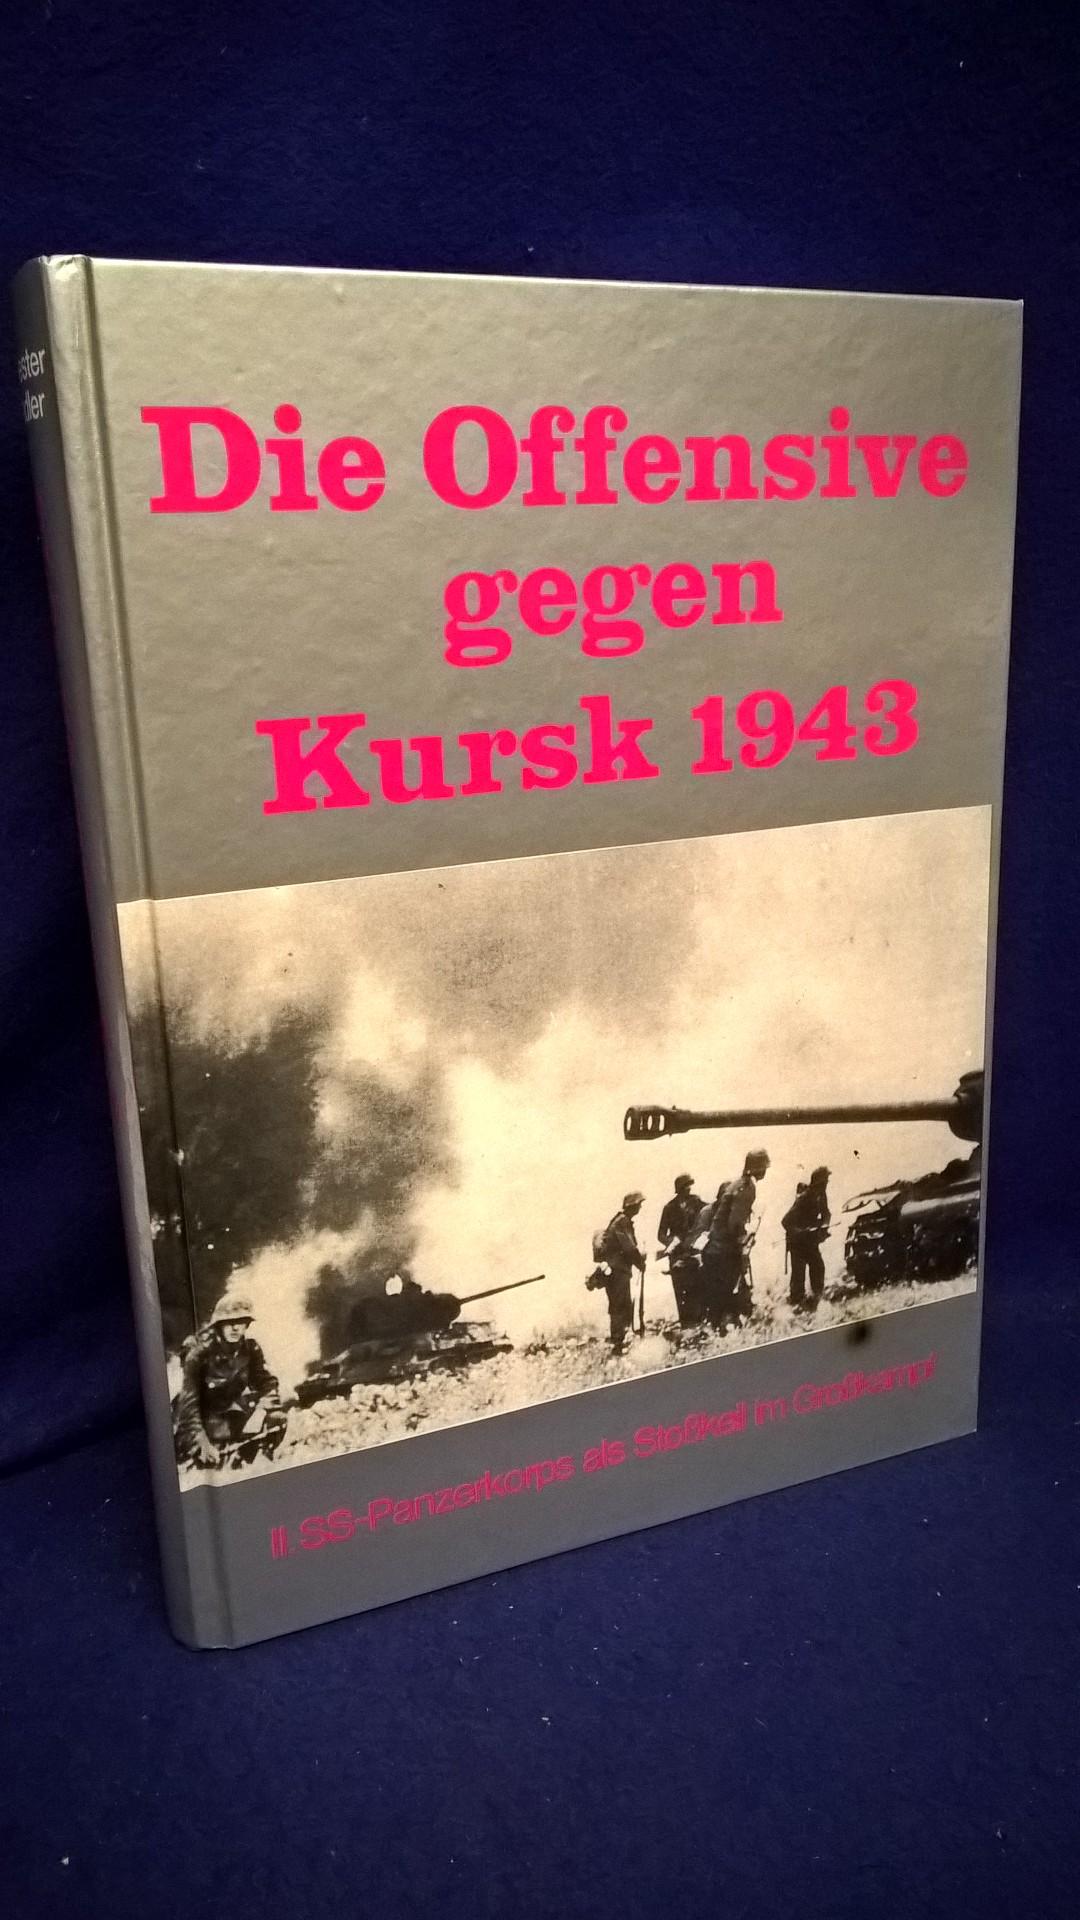 Die Offensive gegen Kursk 1943. II. SS-Panzerkorps als Stoßkeil im Großkampf.